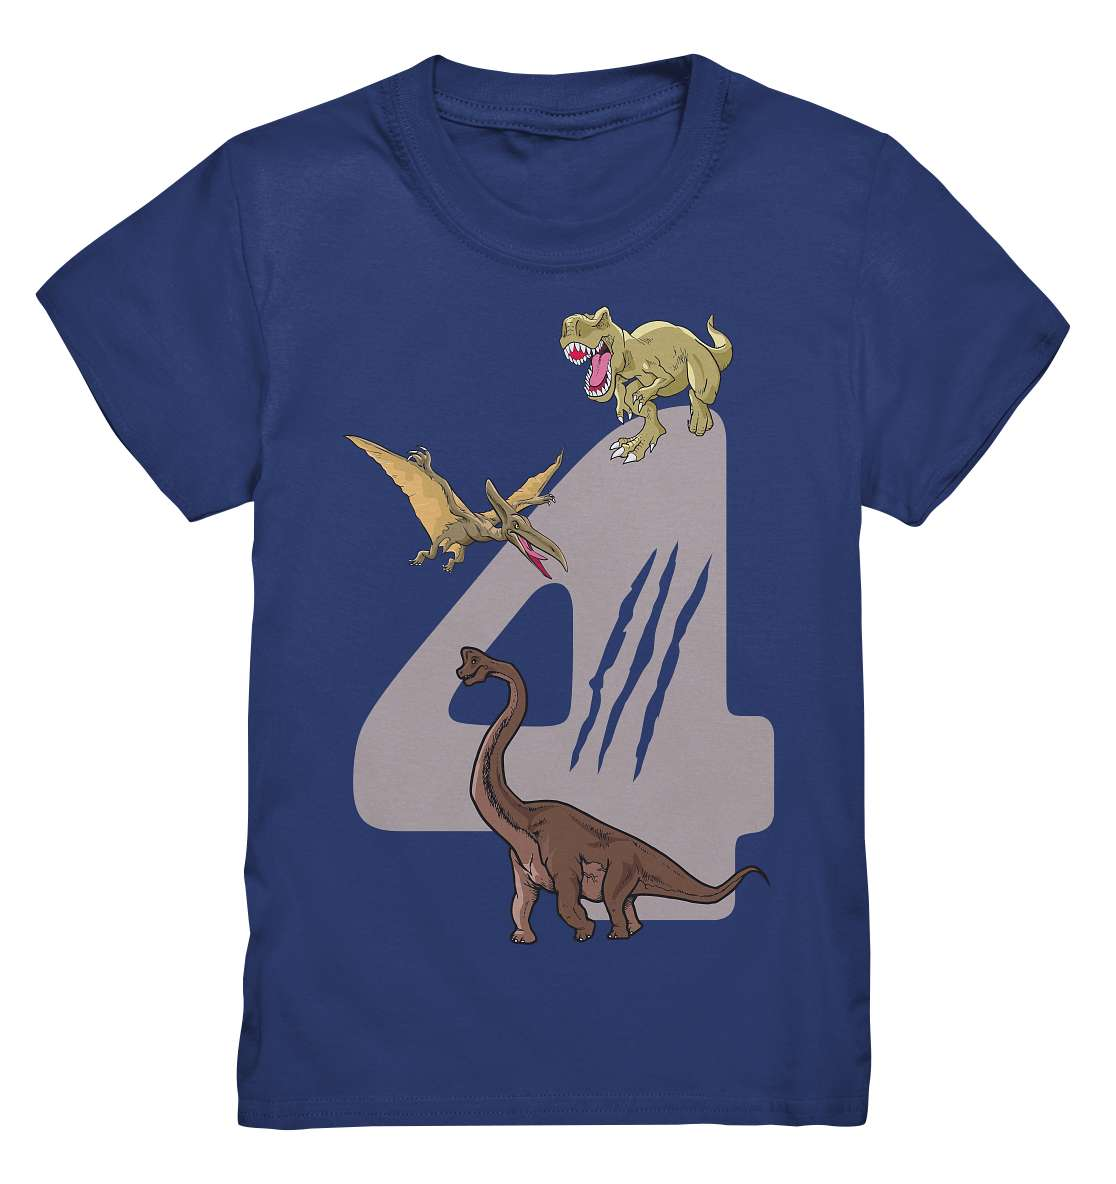 4. Kinder Geburtstag - T-REX Dinosaurier - Ich bin 4 Jahre - Geschenk - Kids Premium Shirt